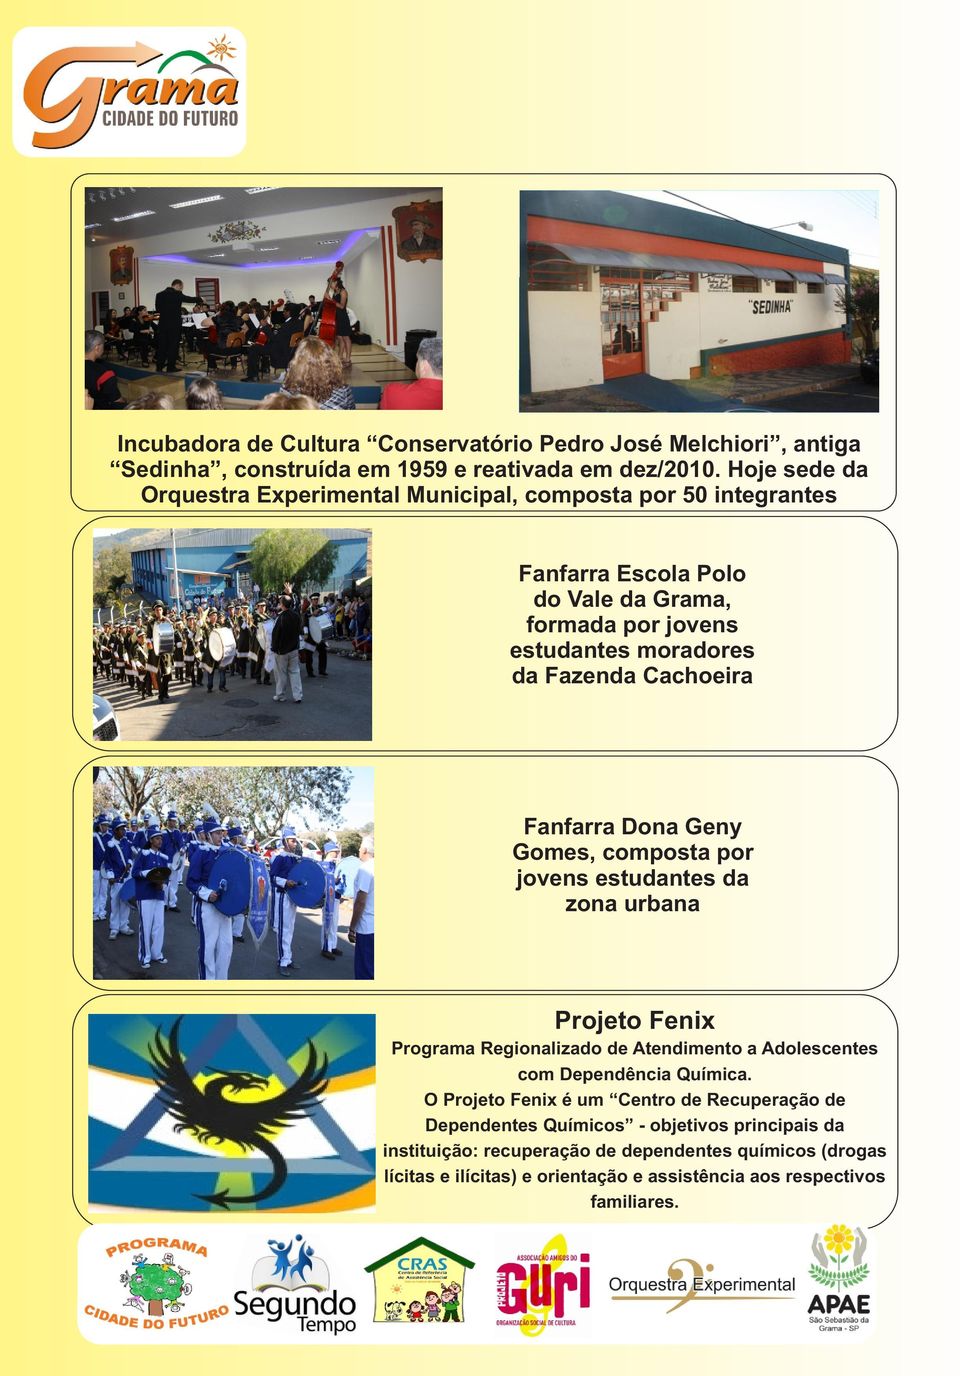 Cachoeira Fanfarra Dona Geny Gomes, composta por jovens estudantes da zona urbana Projeto Fenix Programa Regionalizado de Atendimento a Adolescentes com Dependência